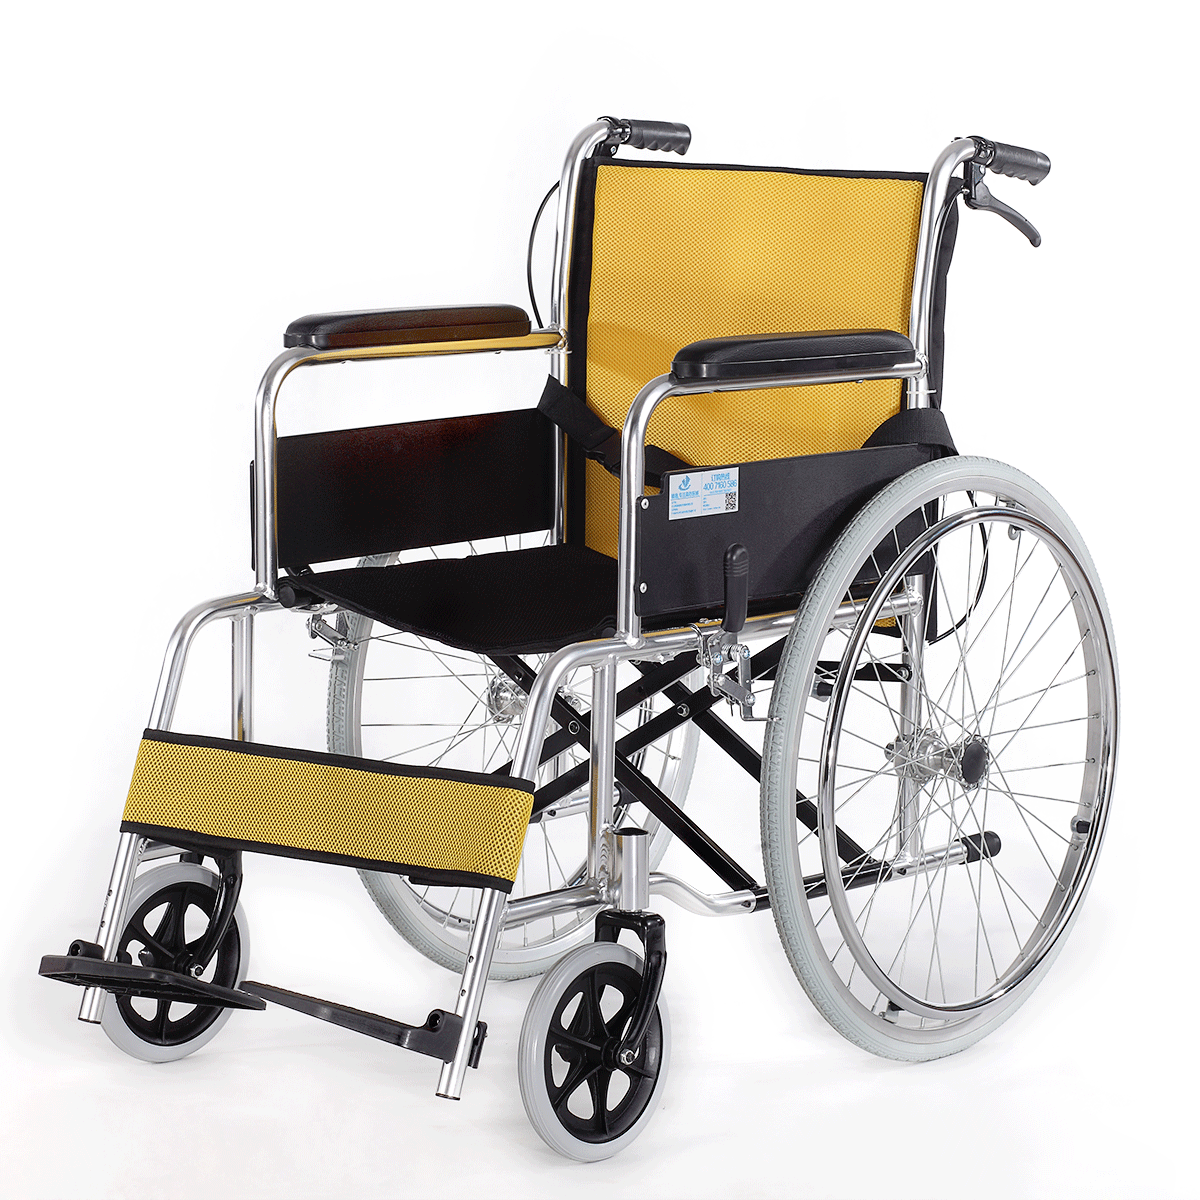 雅德老人轻巧铝合金折叠轮椅轻便便携代步车易携带轮椅车026